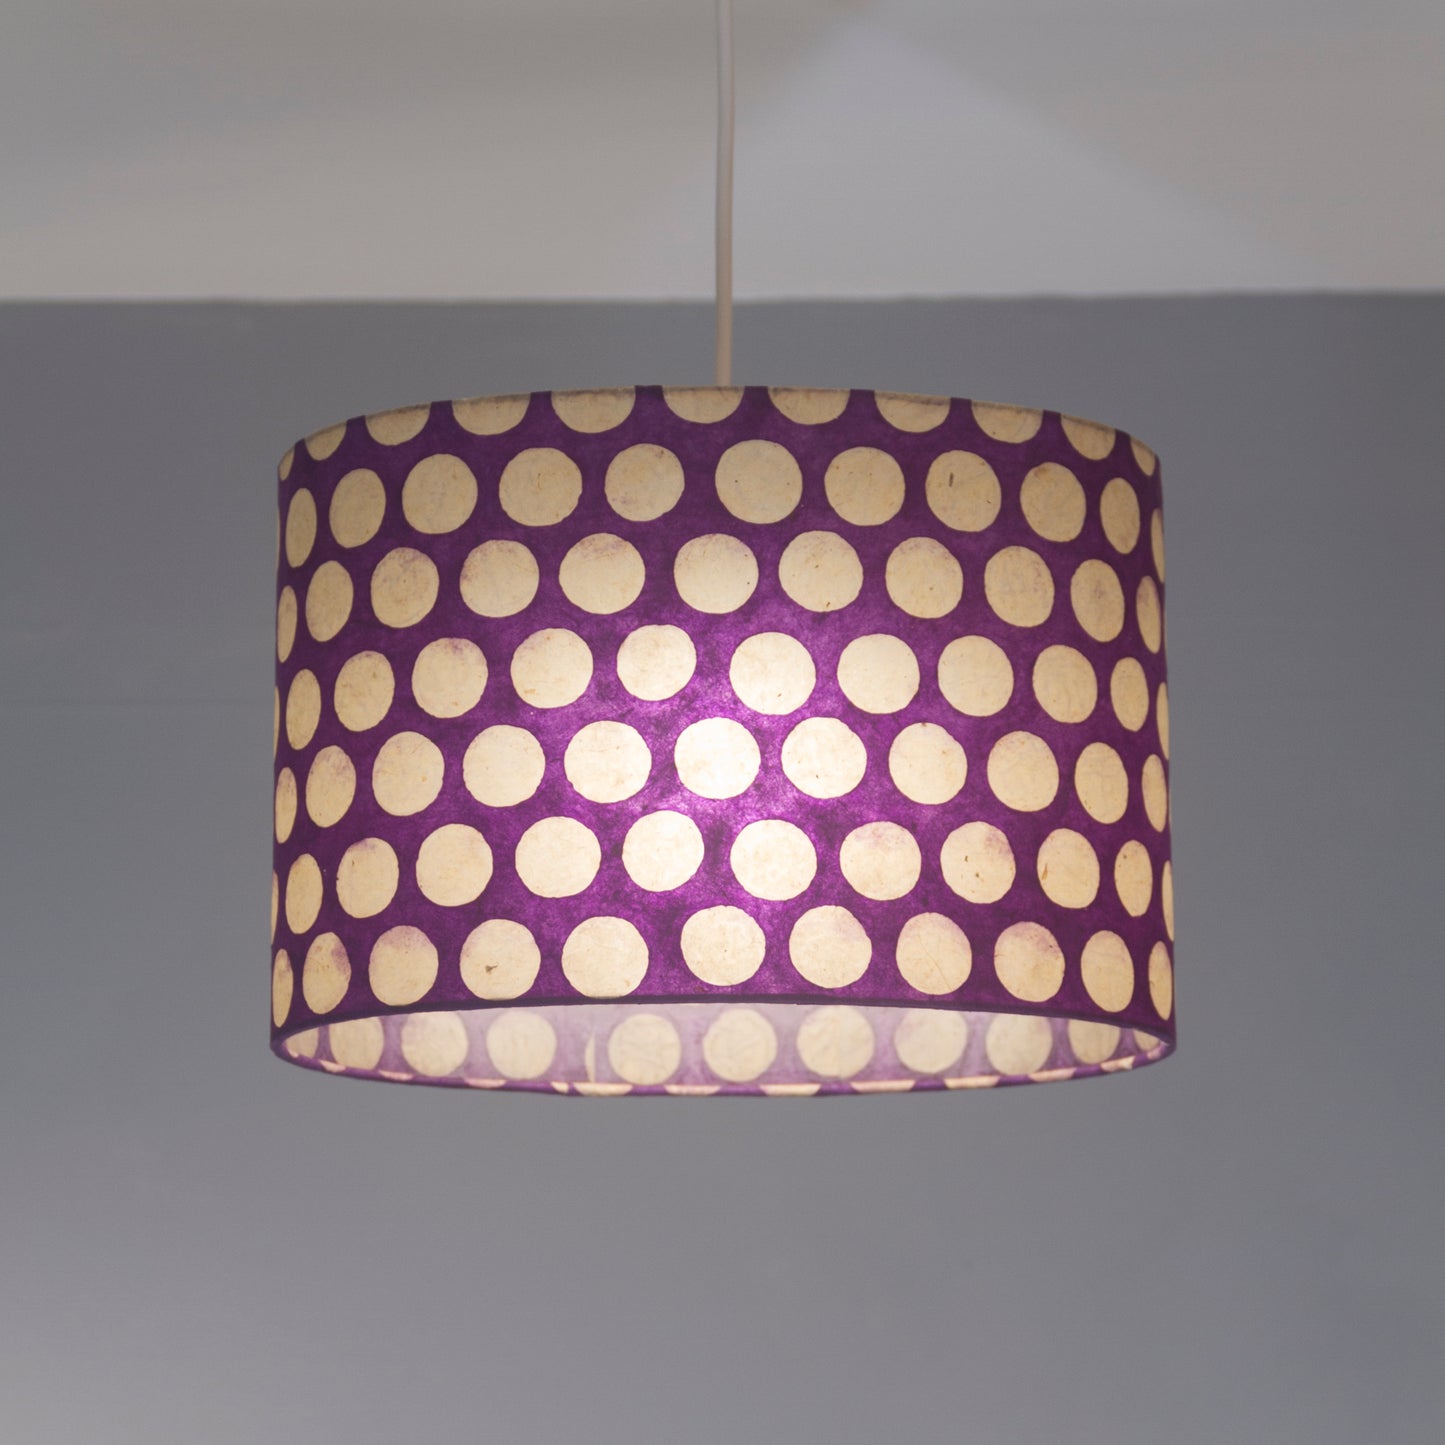 Drum Lamp Shade - P79 - Batik Dots on Purple, 50cm(d) x 25cm(h)